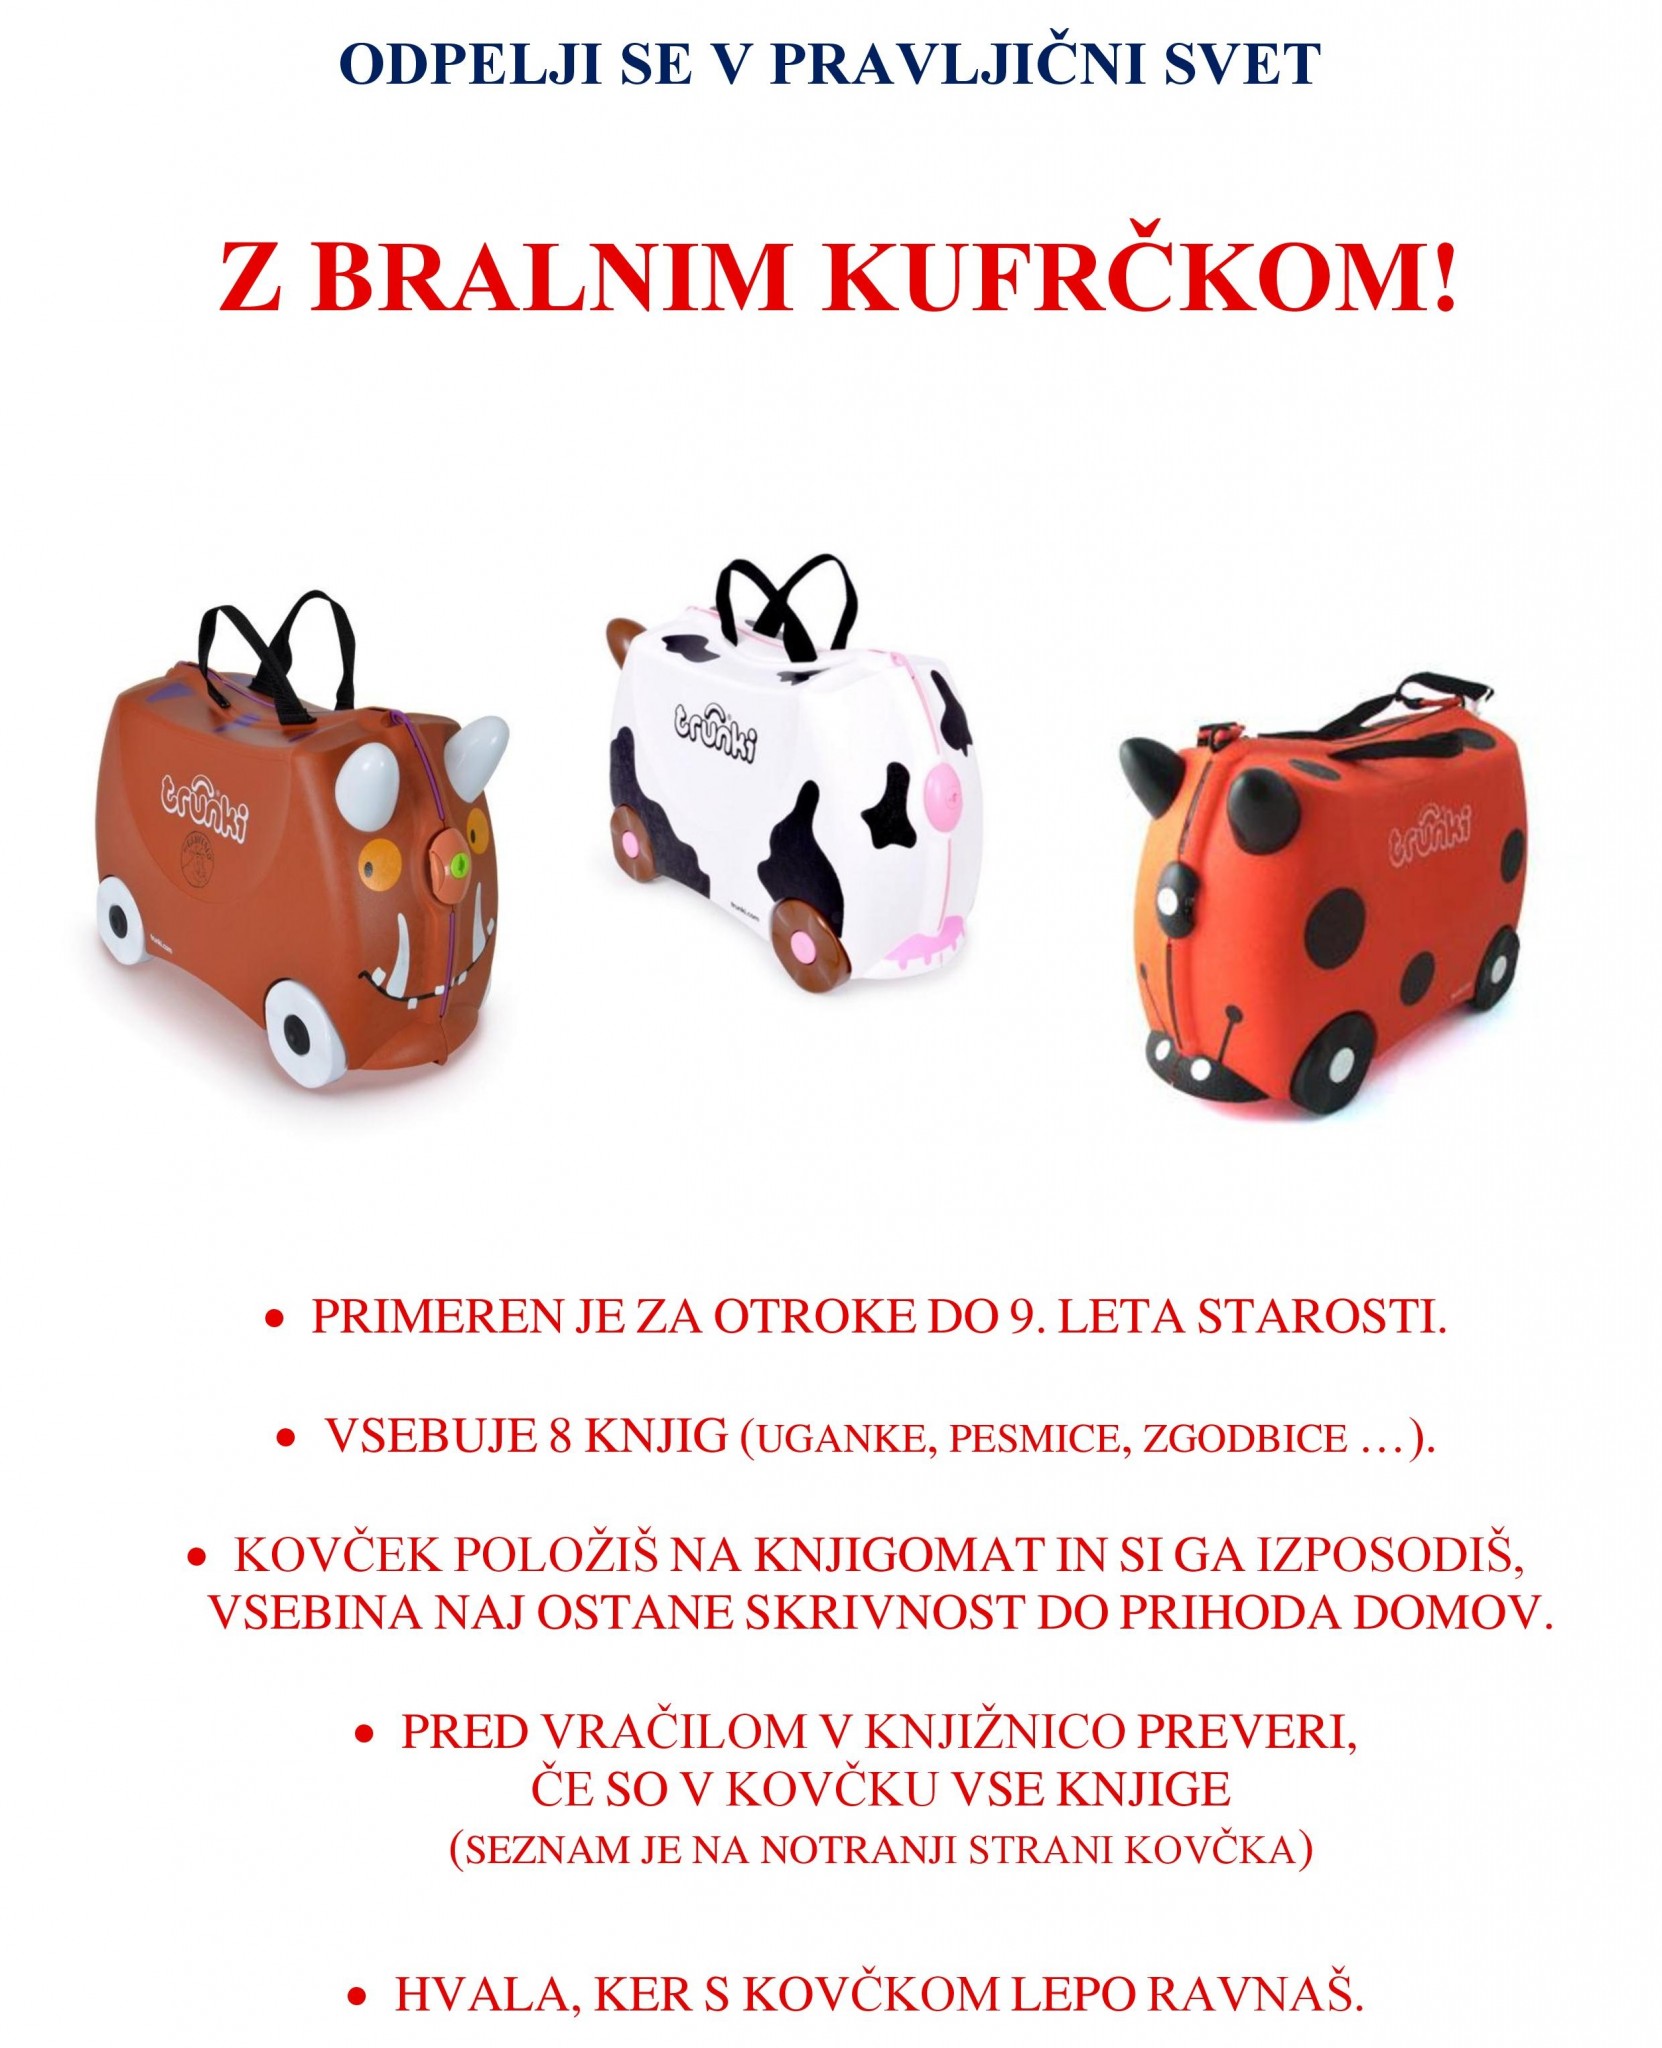 TRUNKI reklama KJUC cover - Bralni kufrček